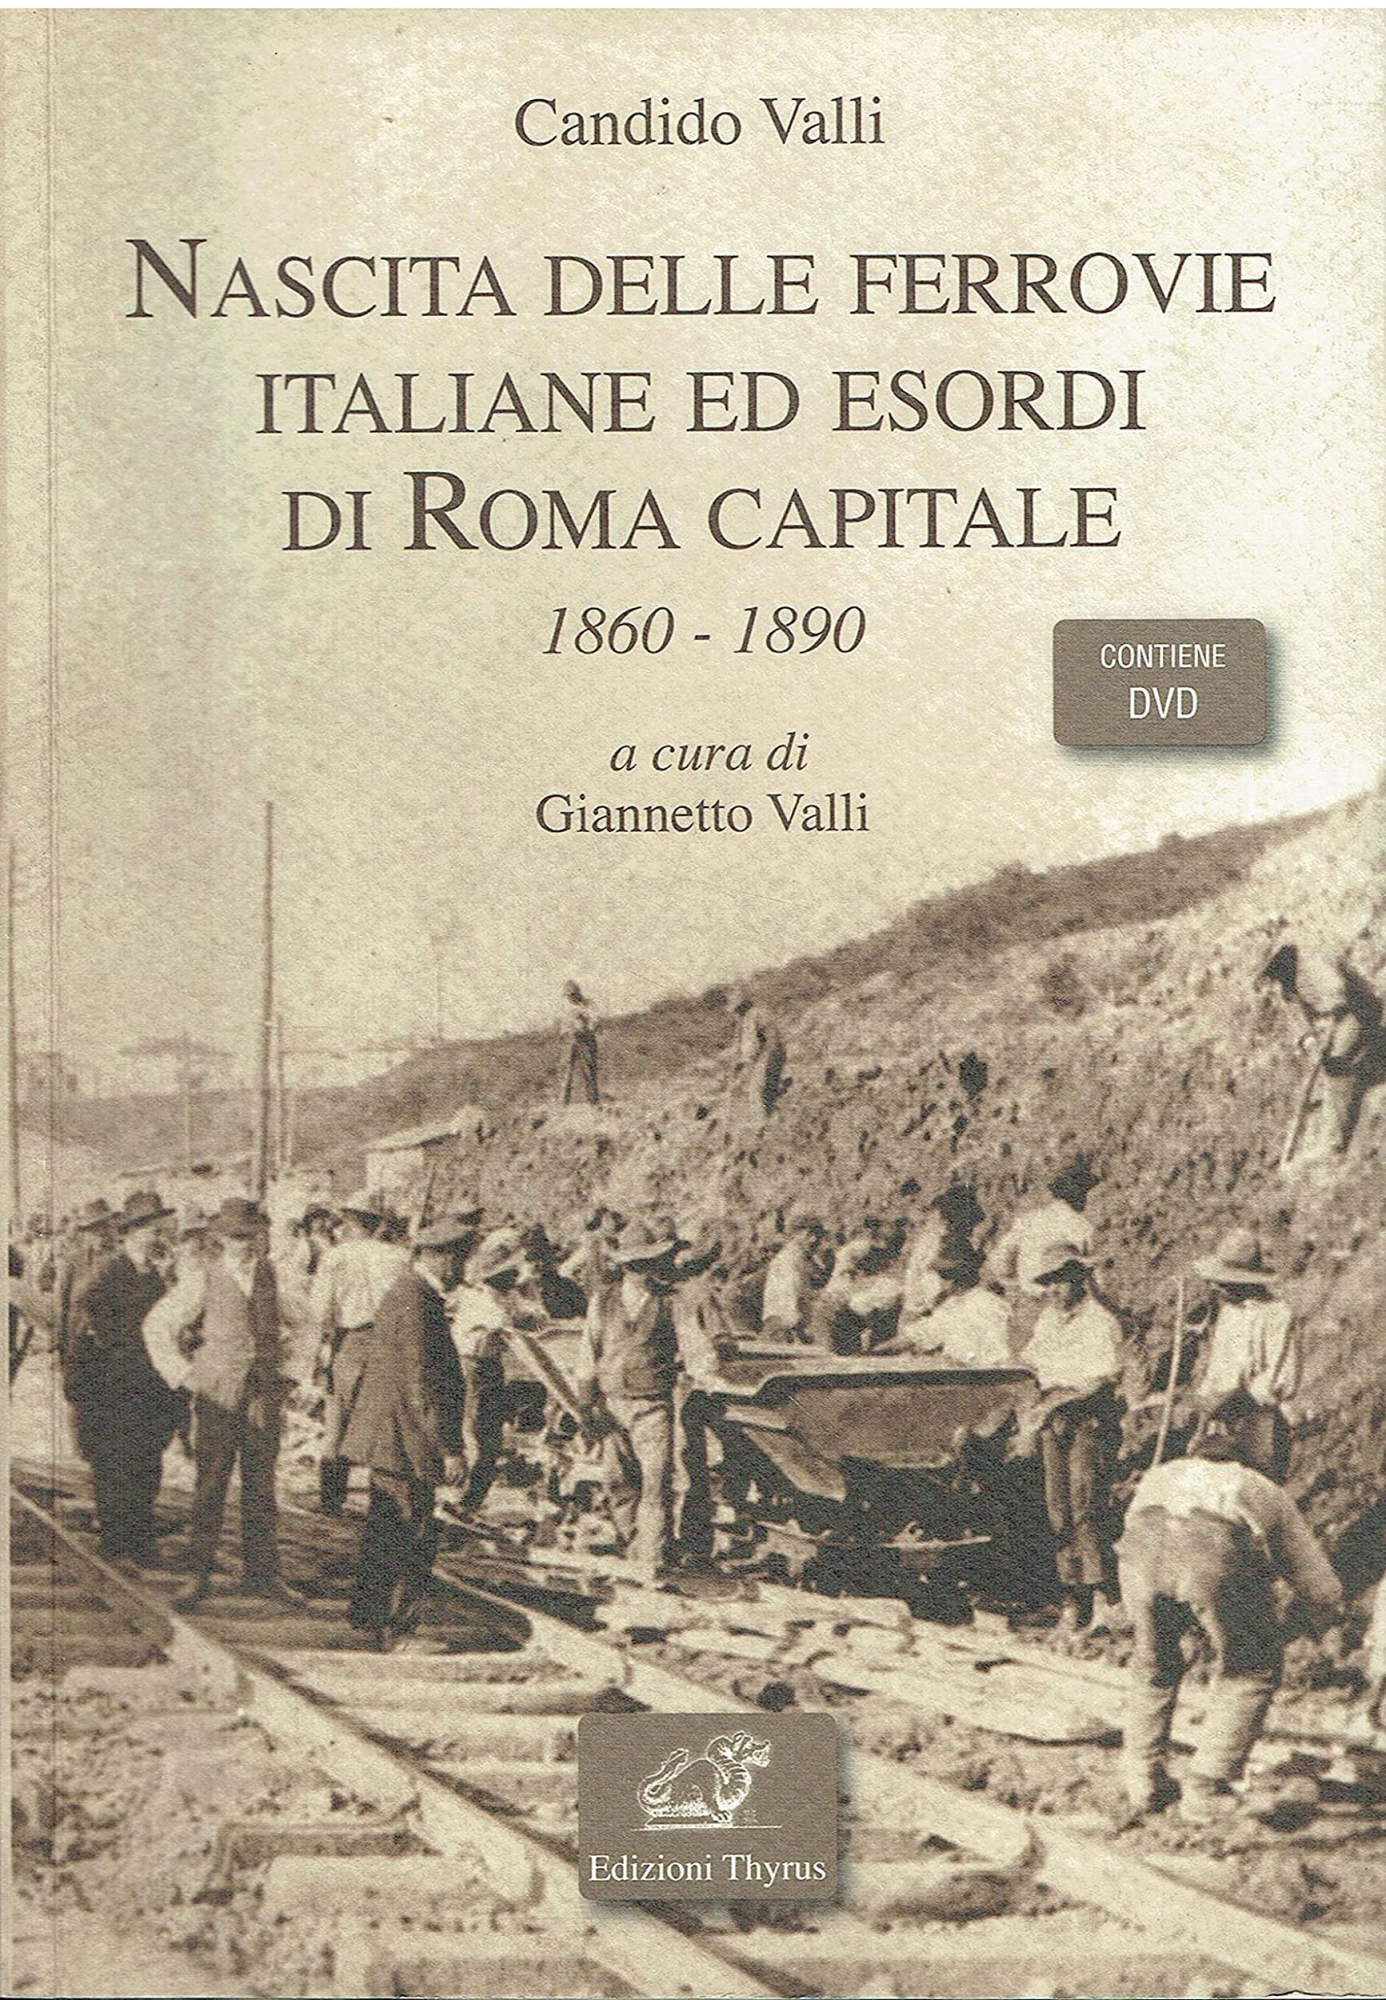 Libri Candido Valli - Nascita Delle Ferrovie Italiane Ed Esordio Di Roma Capitale (1860-1890) NUOVO SIGILLATO SUBITO DISPONIBILE